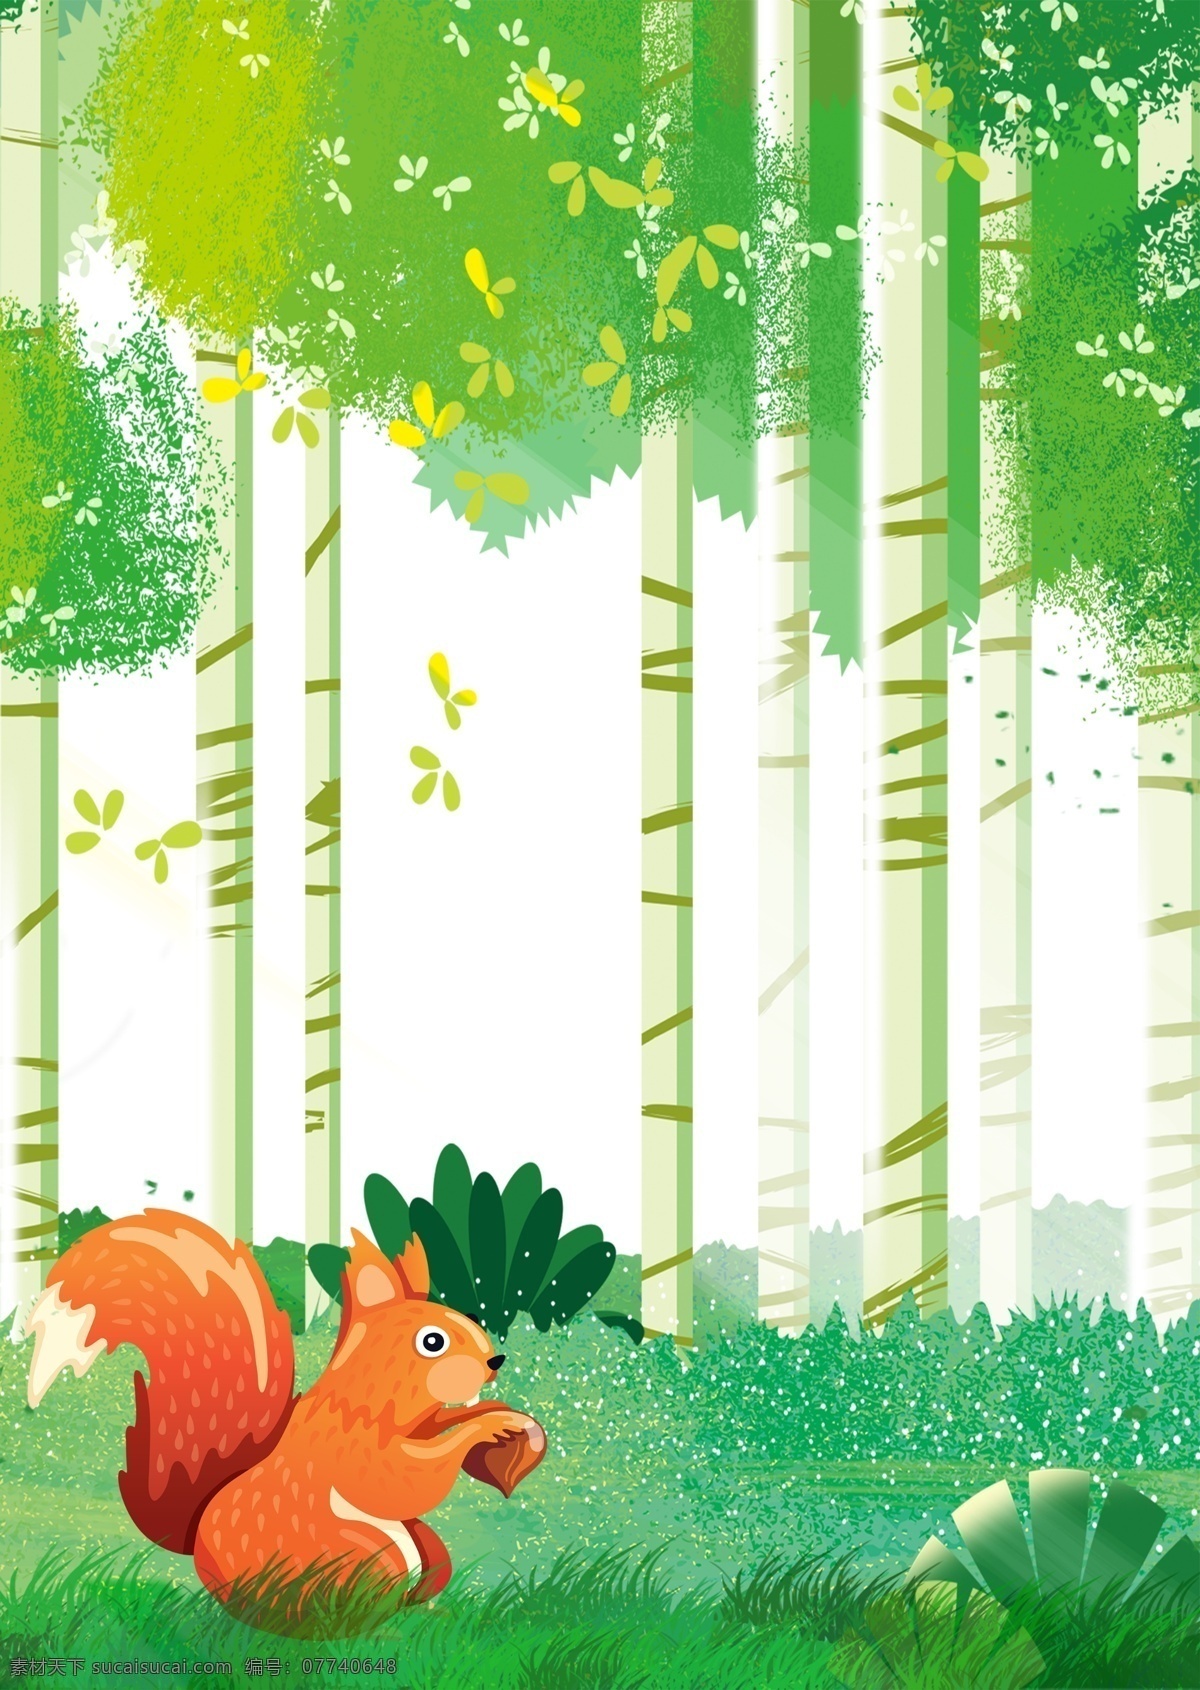 森林 插画 海报 背景 草地 清新 绿色 梦幻 植物 动物 淘宝 树林 树丛 美丽 星空 梅花鹿 松鼠 兔子 狐狸